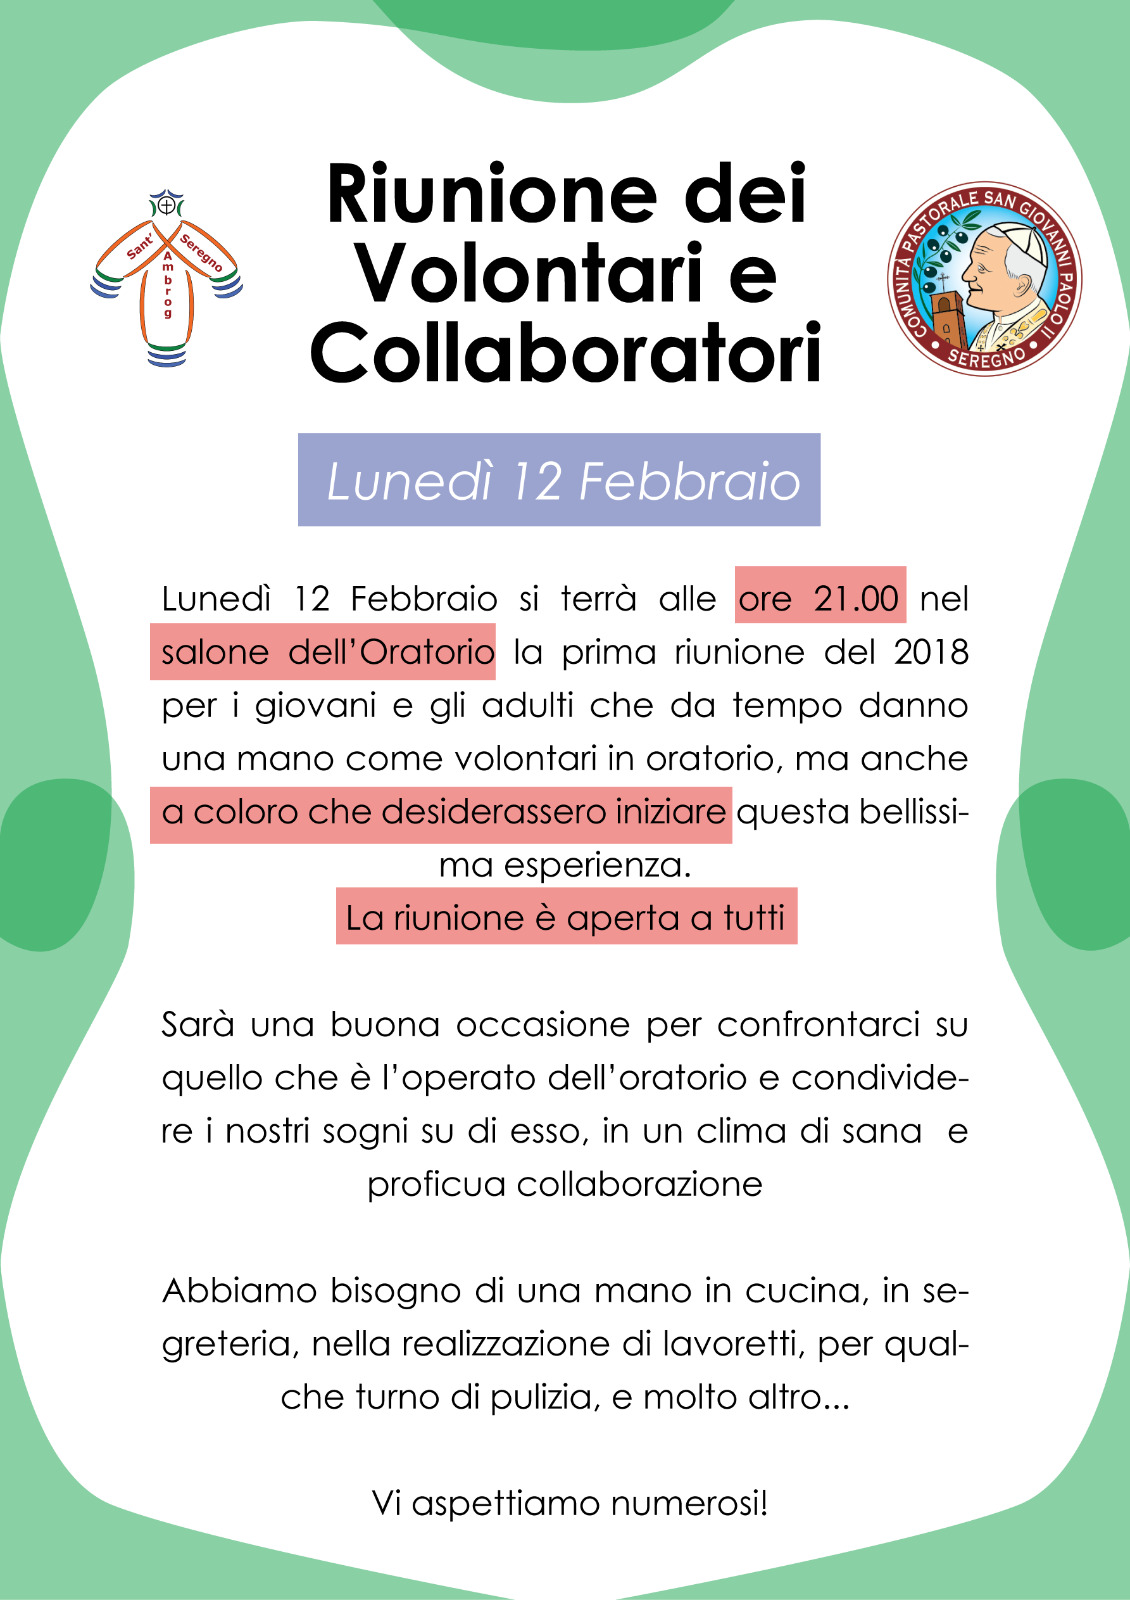 12 febbraio 2018 riunione dei volontari e collaboratori